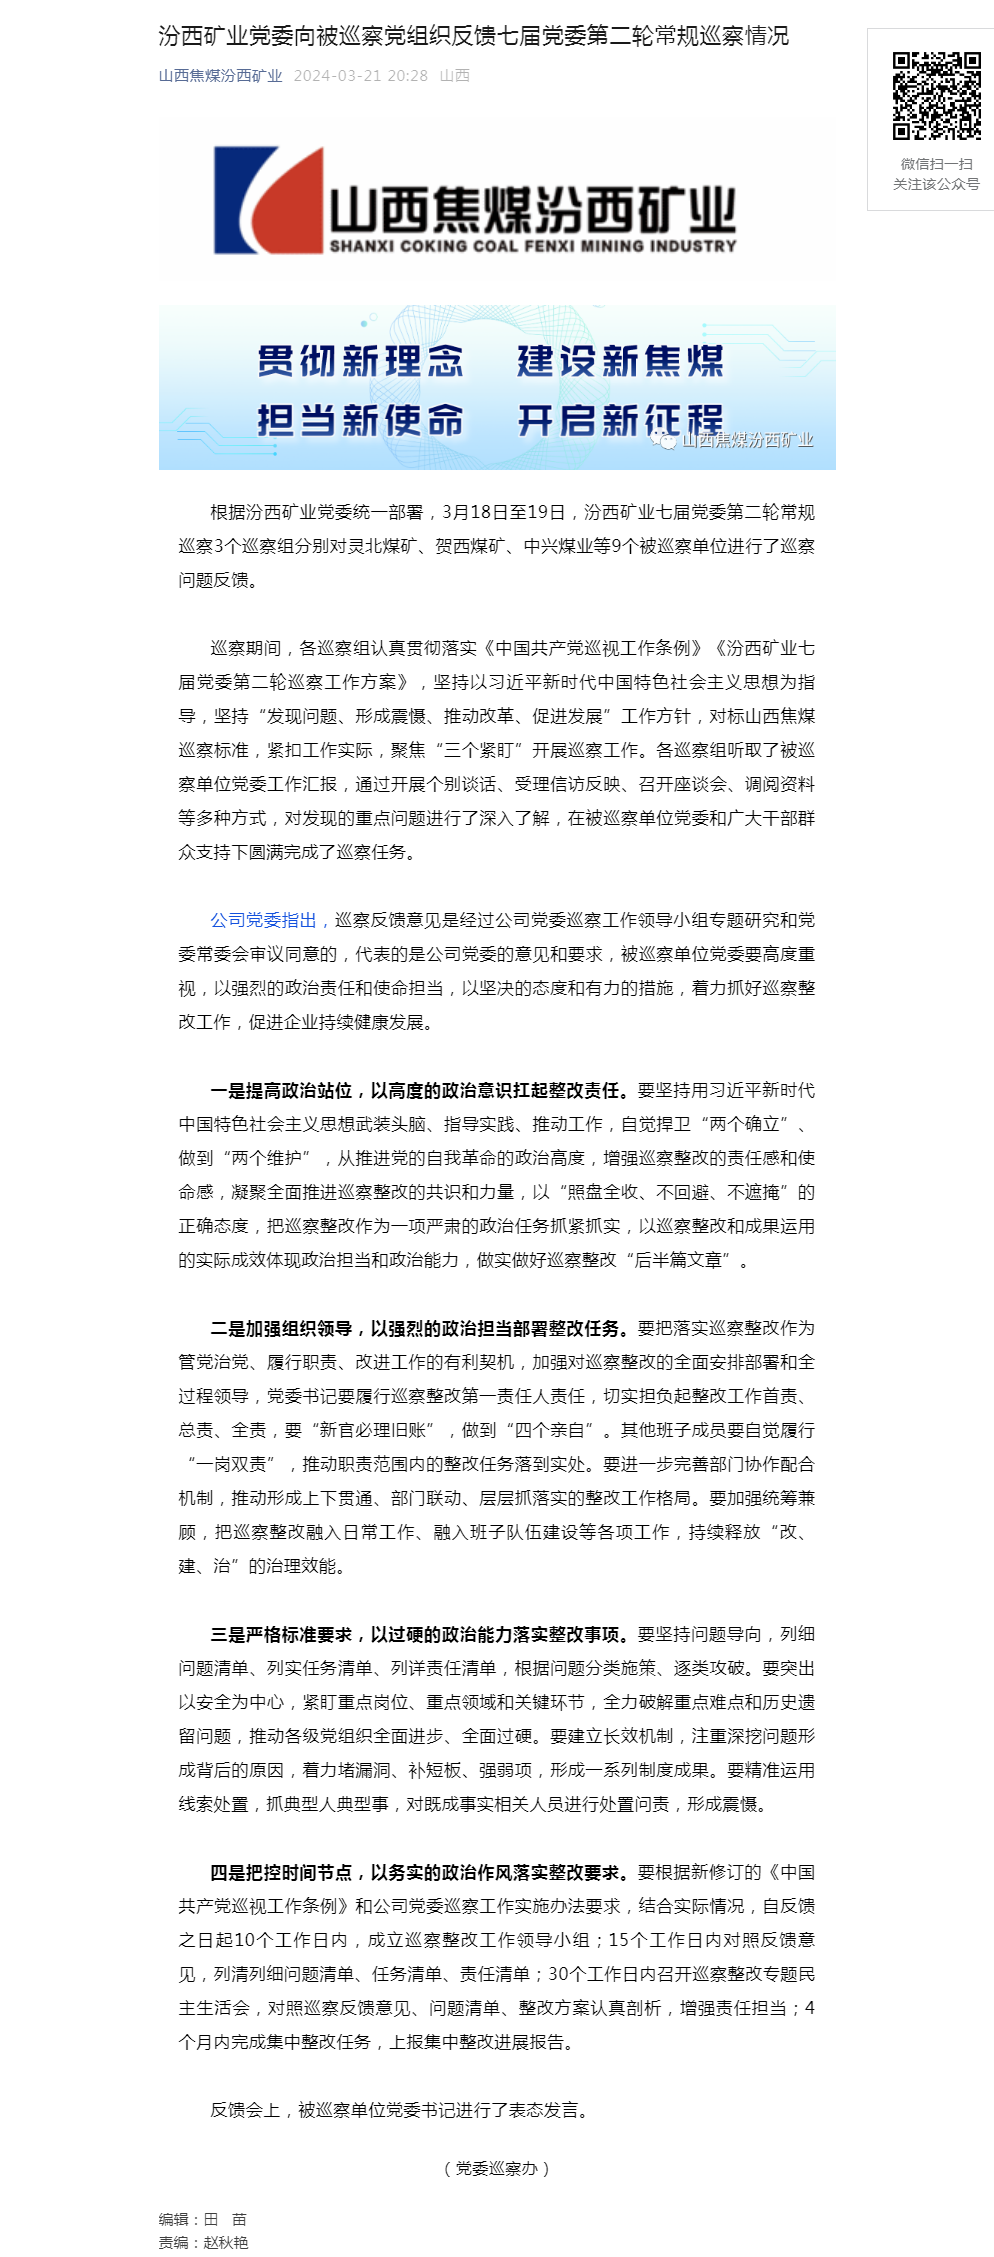 汾西矿业党委向被巡察党组织反馈七届党委第二轮常规巡察情况.png